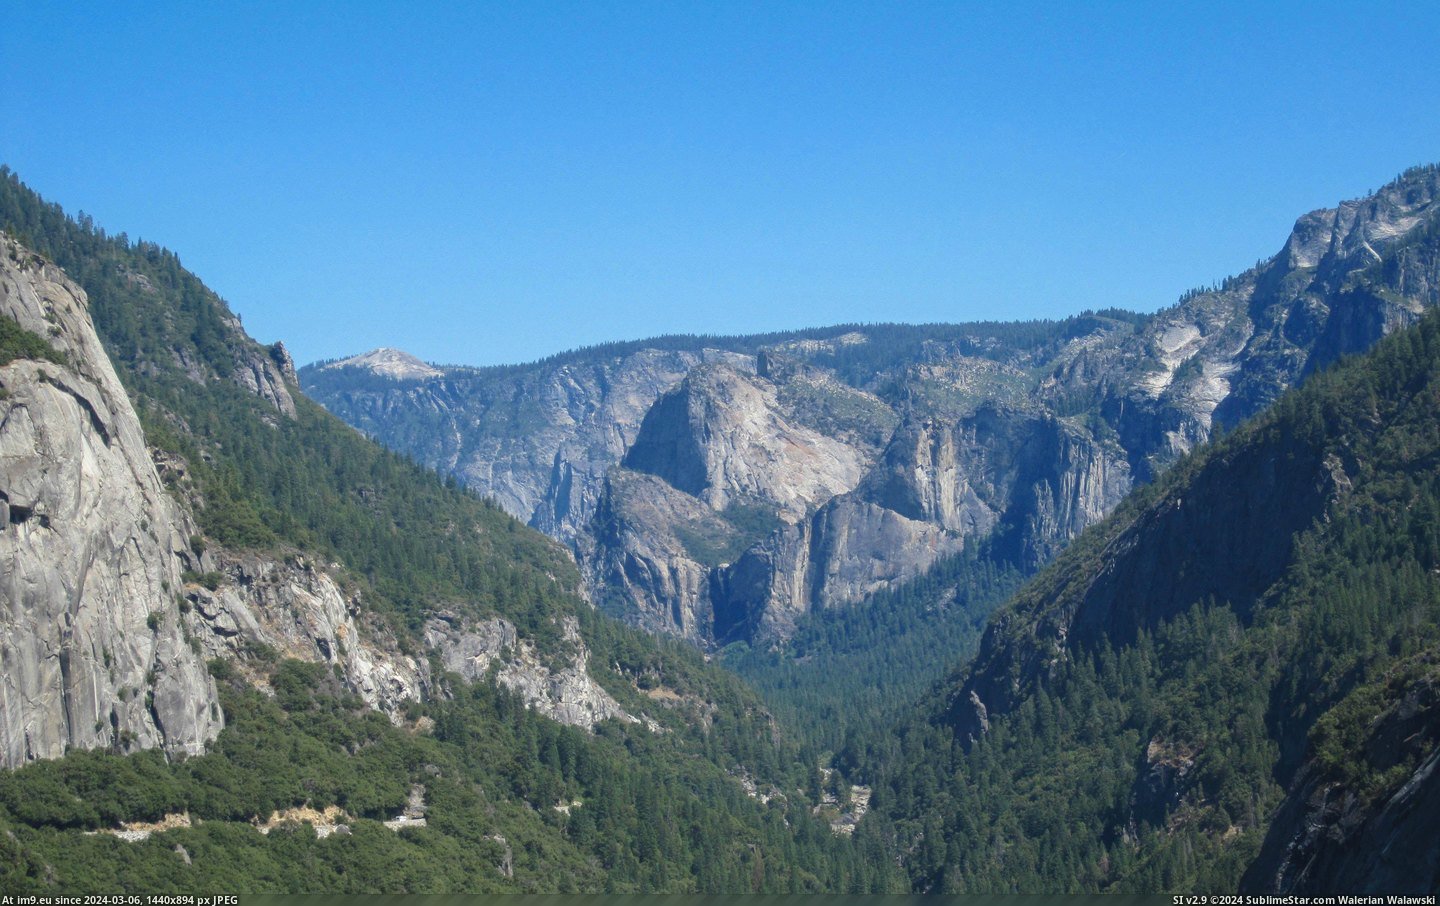  #Yosemite  [Earthporn] Yosemite, CA [4000x2495] Pic. (Bild von album My r/EARTHPORN favs))